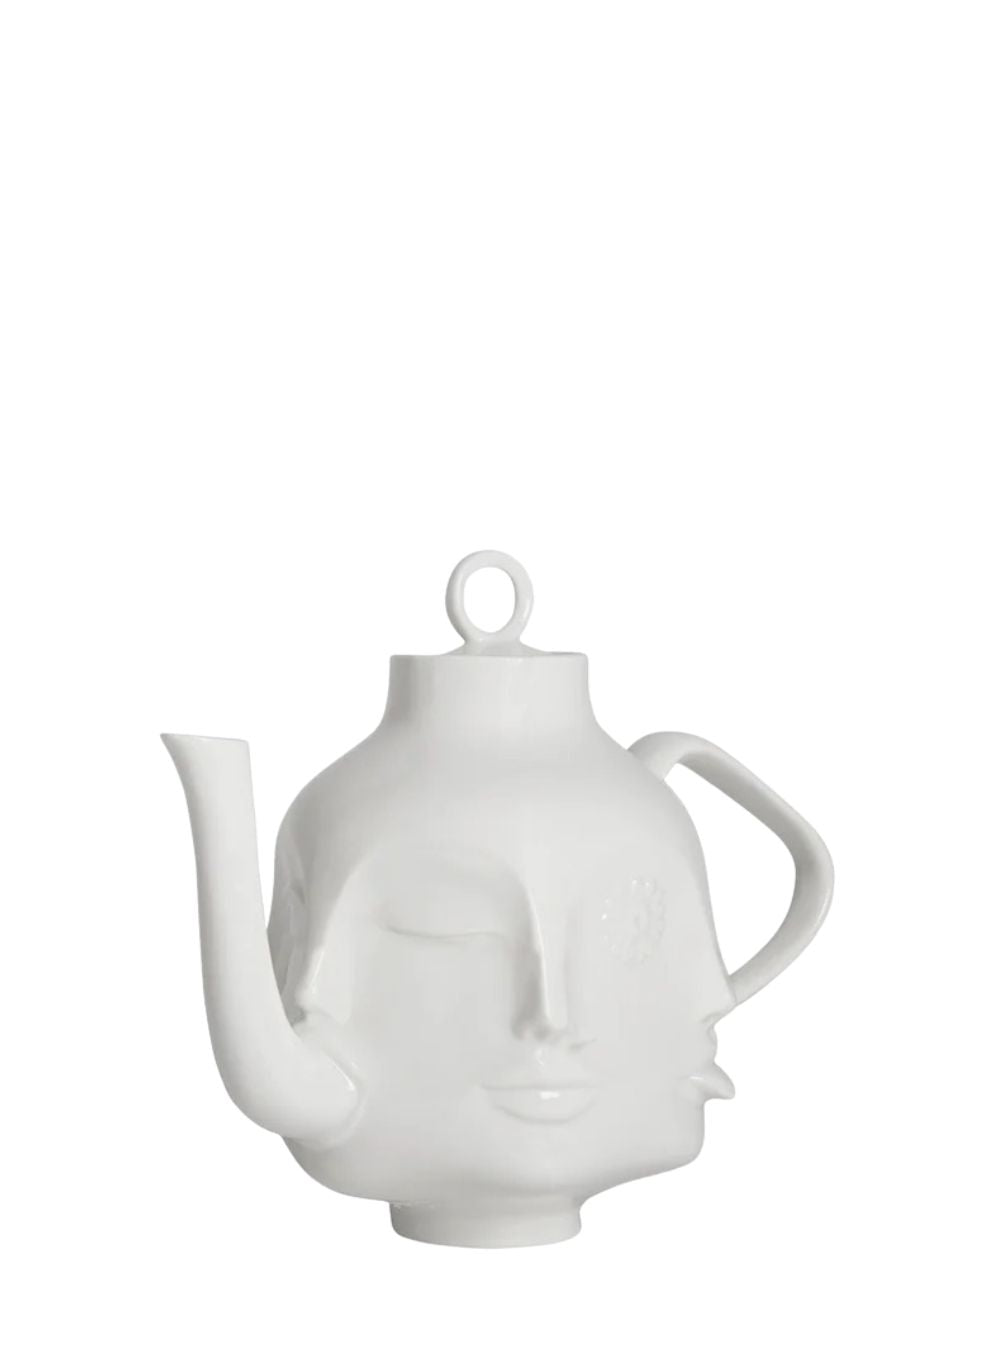 JONATHAN ADLER | Dora Maar Teapot